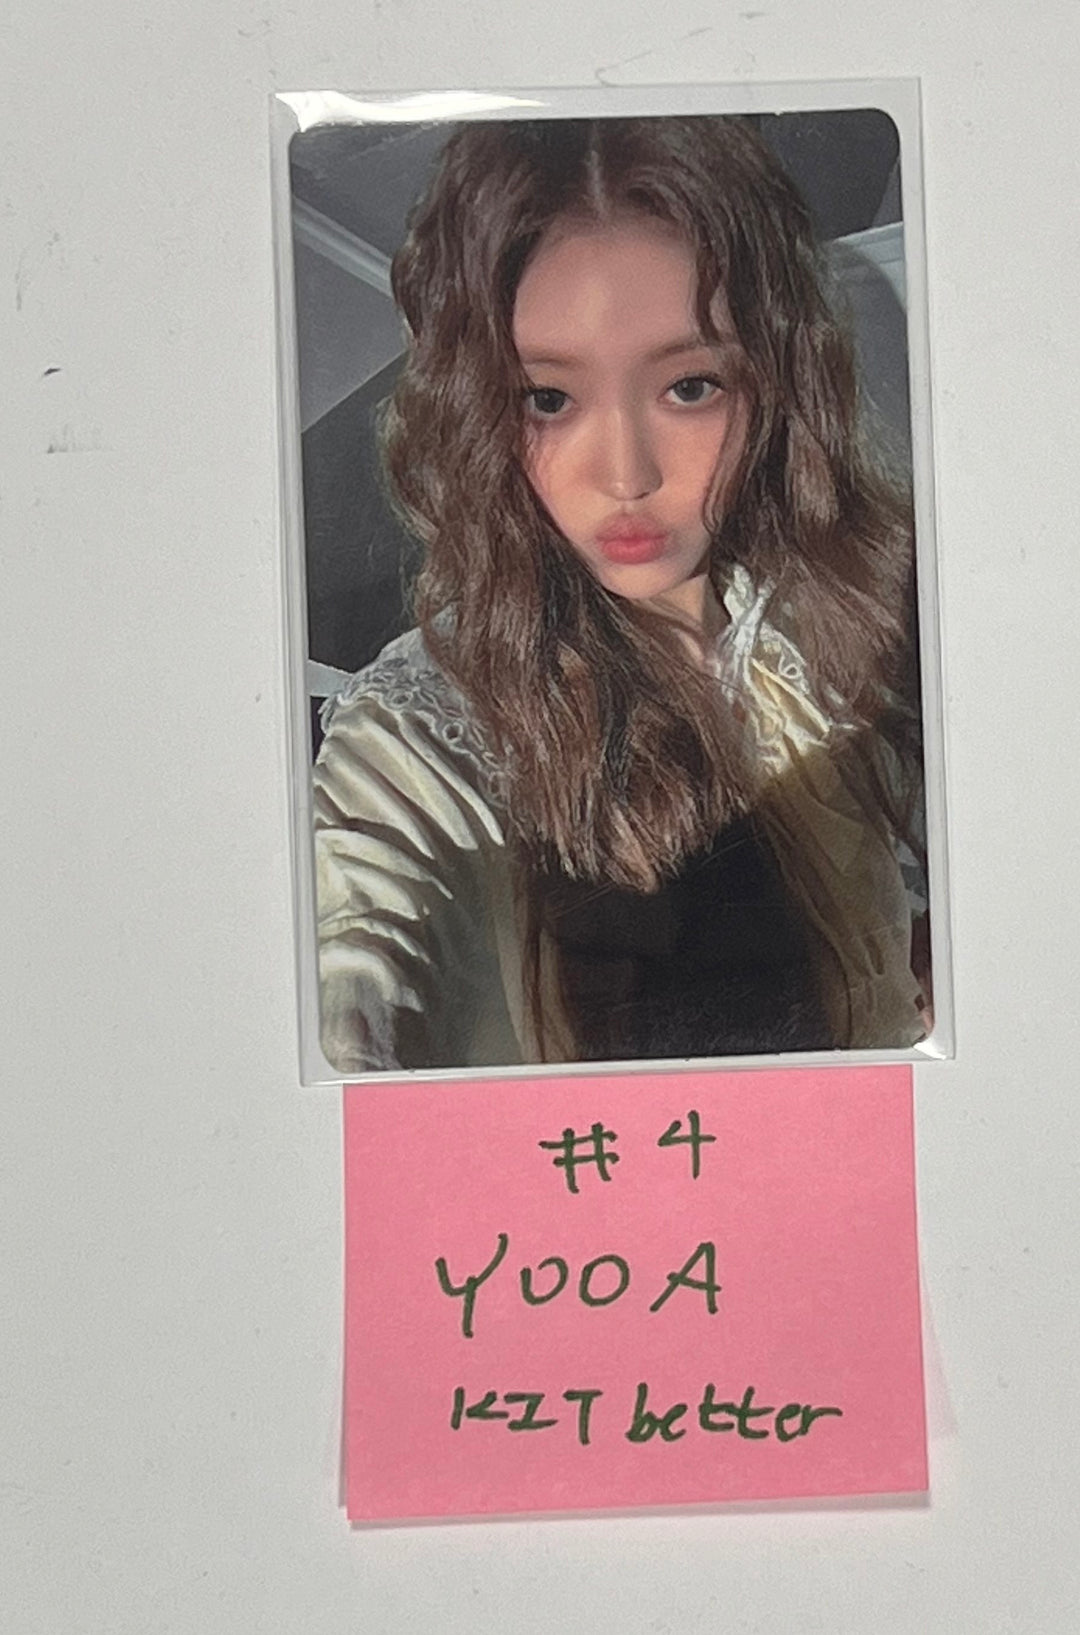 YOOA (Of Oh My Girl) "Borderline" - Kit Better ファンサインイベントフォトカード [Kit Ver.] [24.3.26]